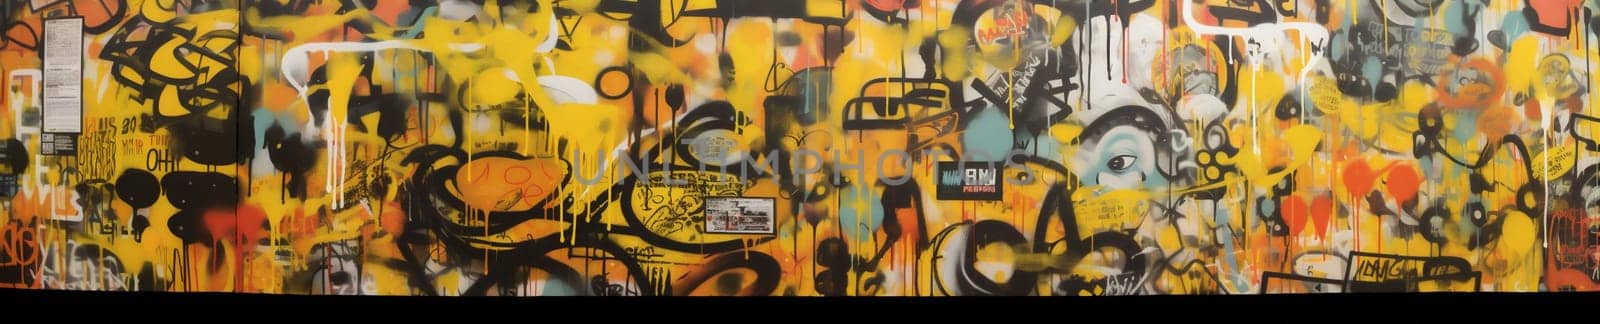 wall background spray yellow style paint graffiti urban colourful banner art. Generative AI. by Vichizh